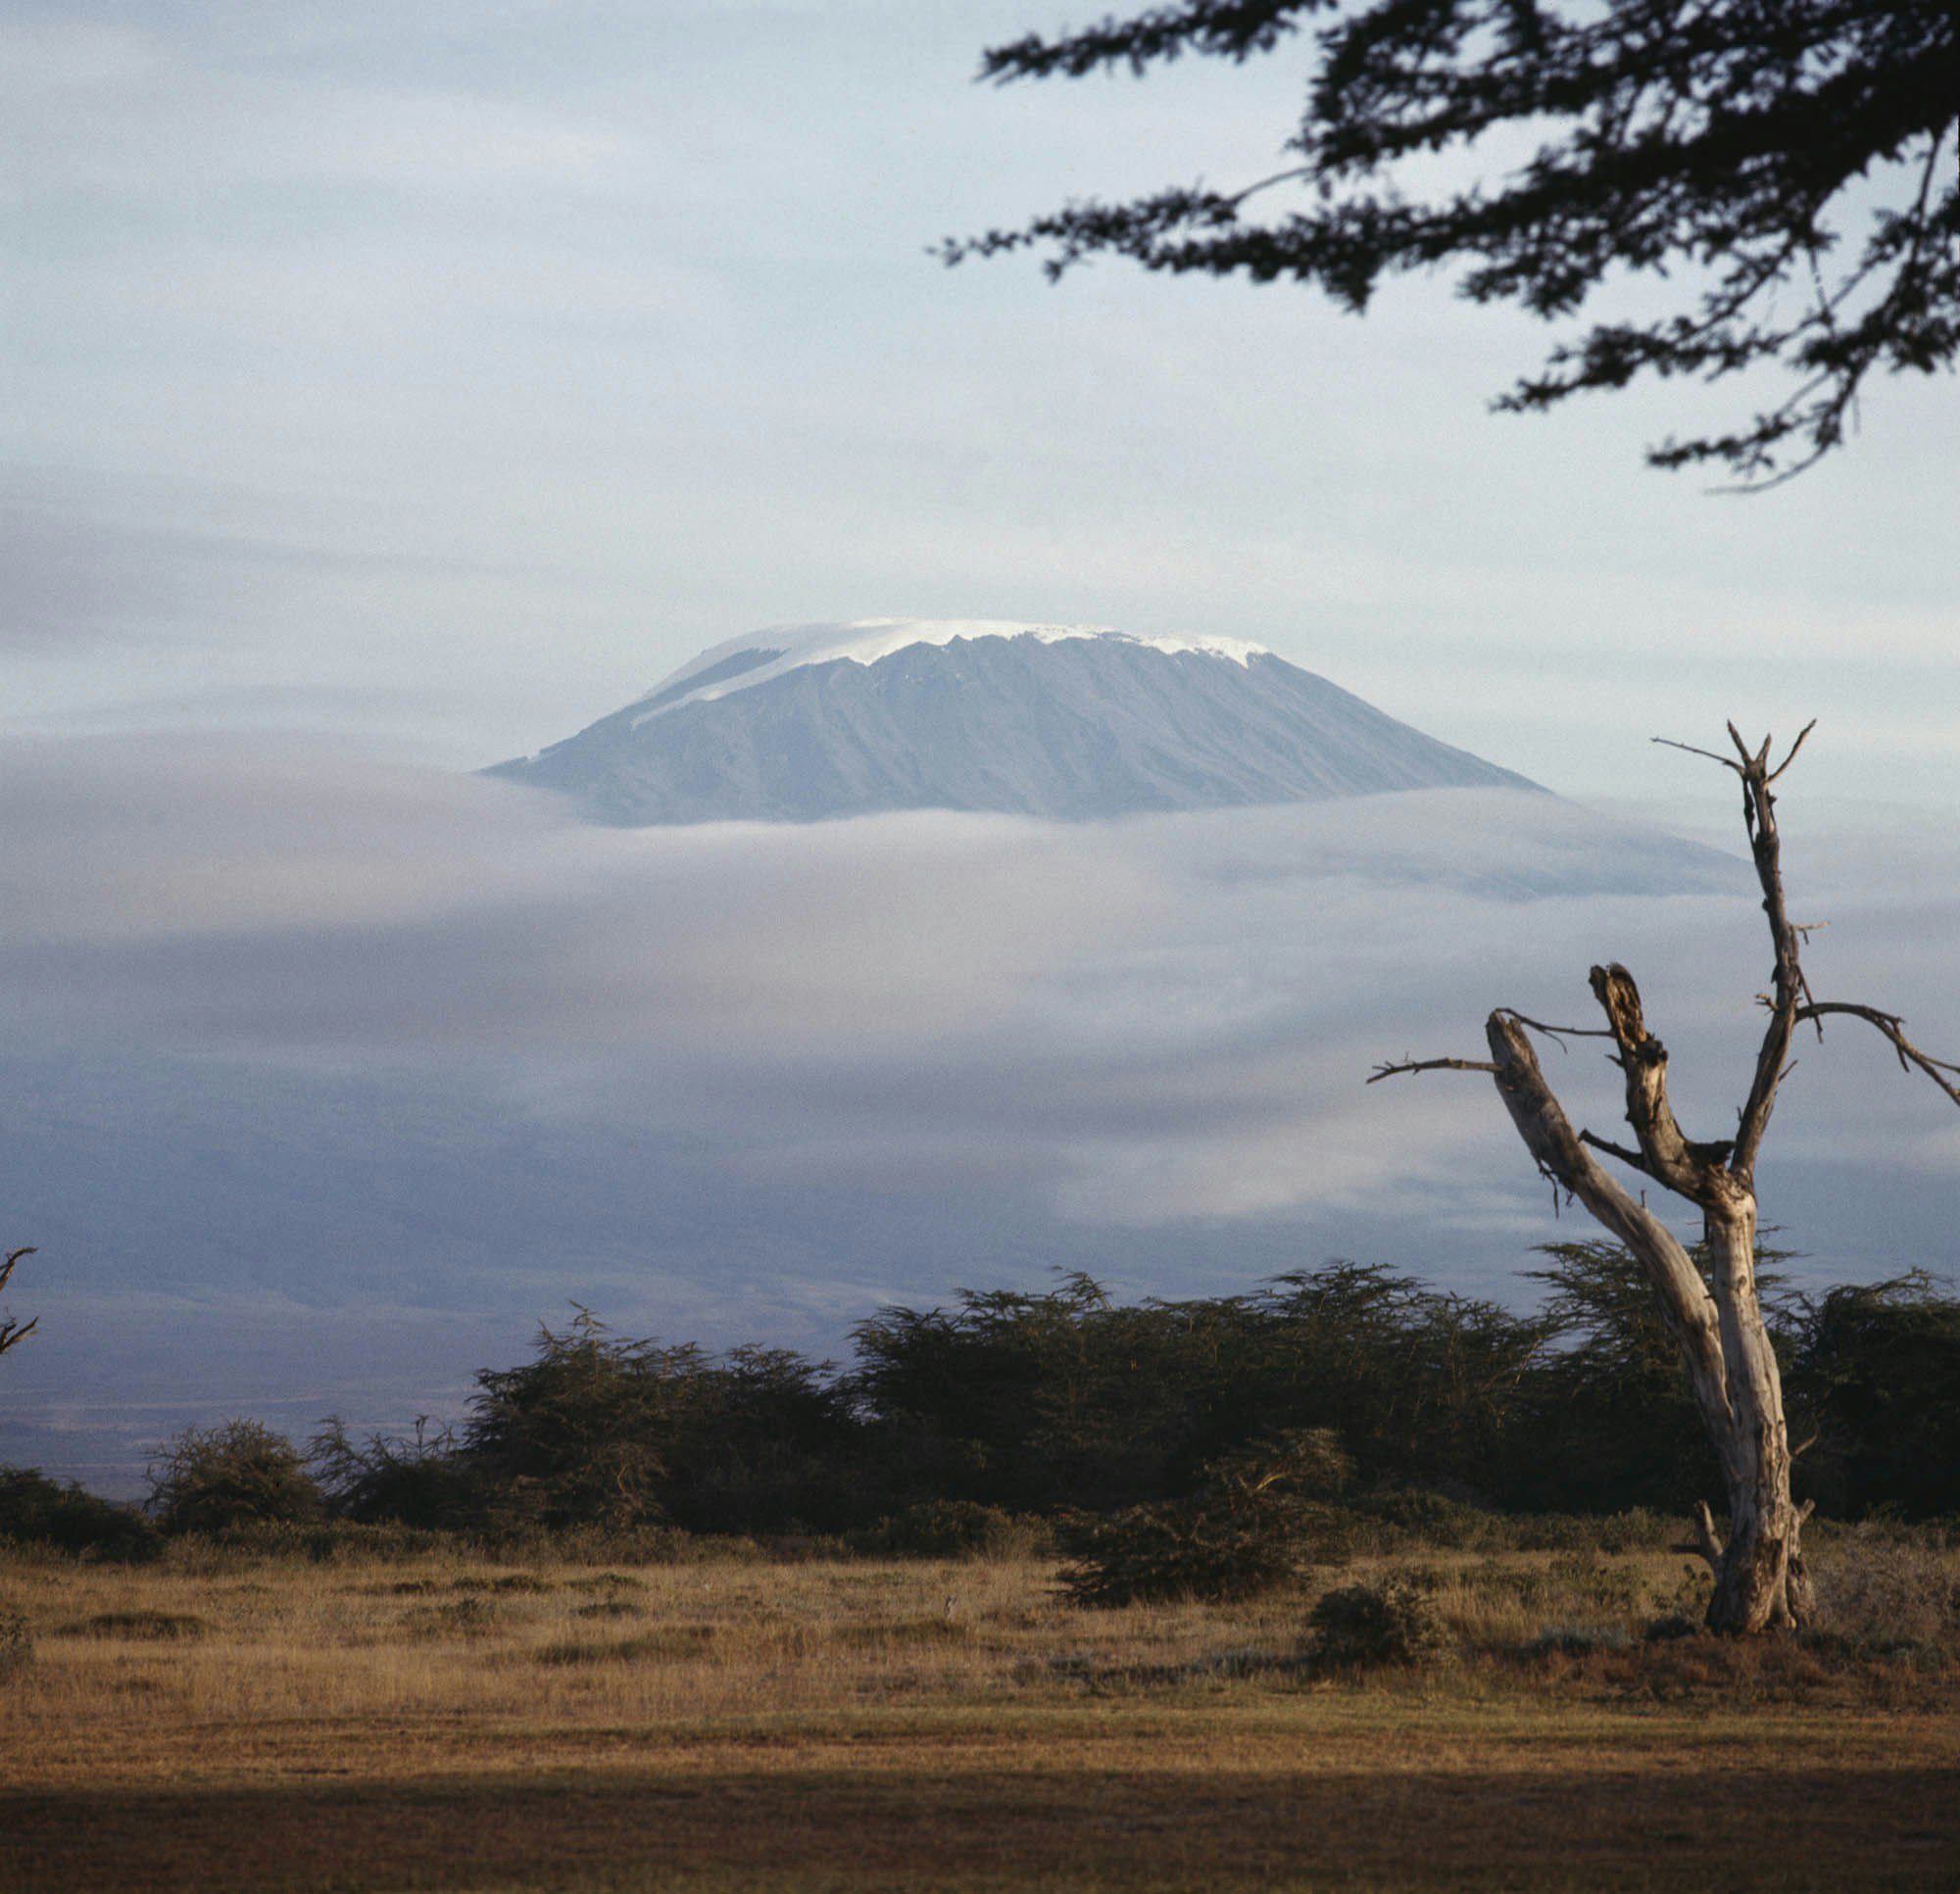 Tanzania announces Kilimanjaro cable car plan